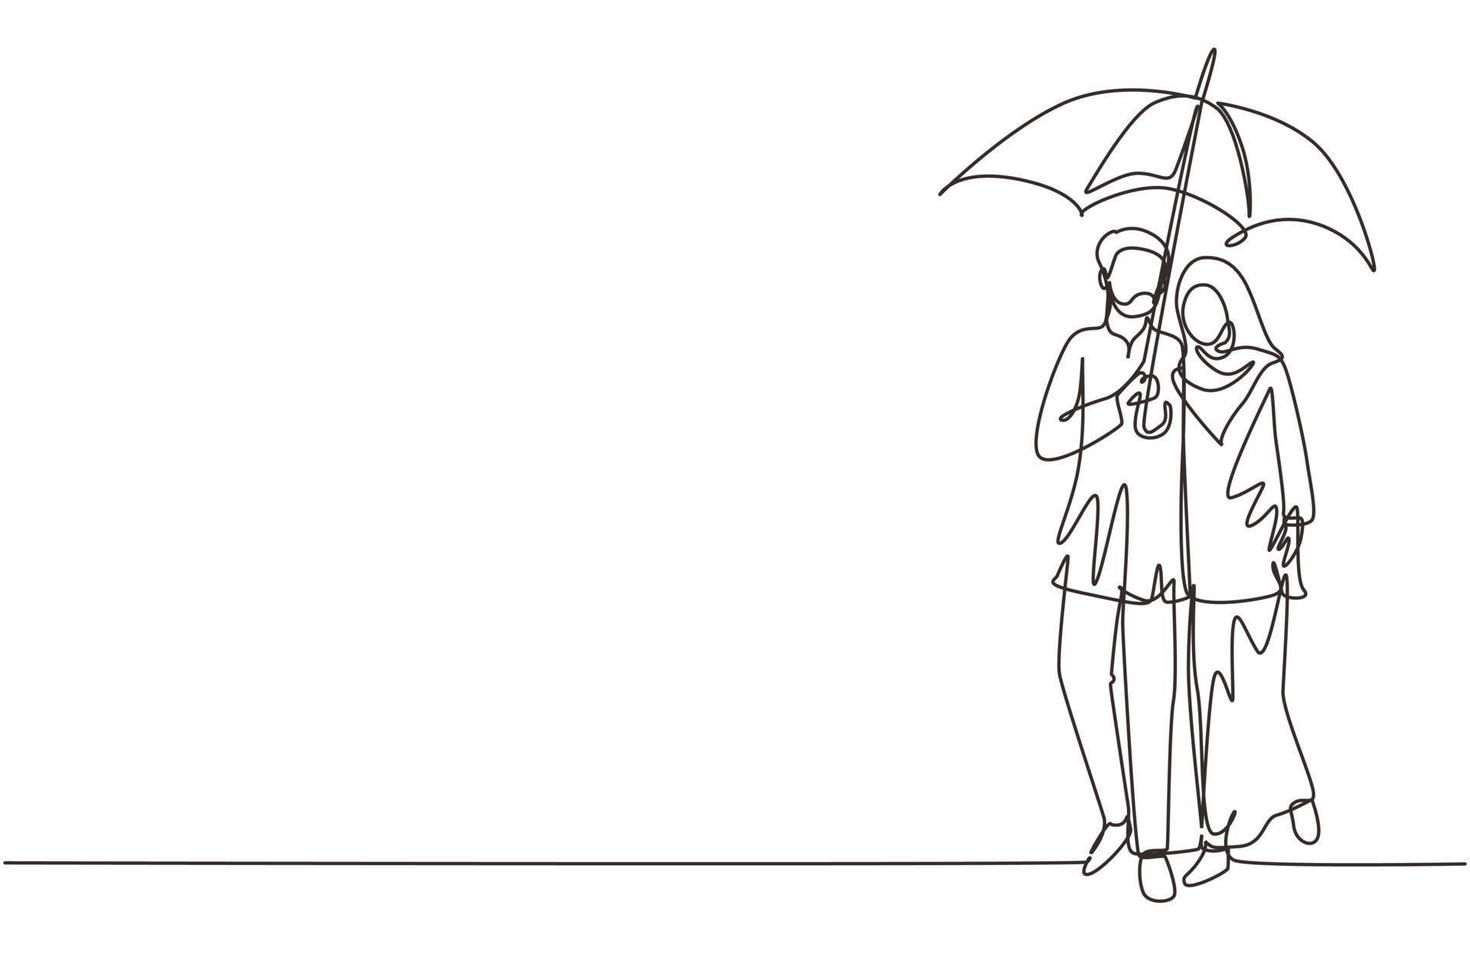 disegno a linea continua singola coppia araba uomo donna, ragazza e ragazzo che camminano tenendo l'ombrello sotto la pioggia abbracciando sorridenti. coppia romantica al tempo piovoso autunnale. vettore di disegno grafico a una linea